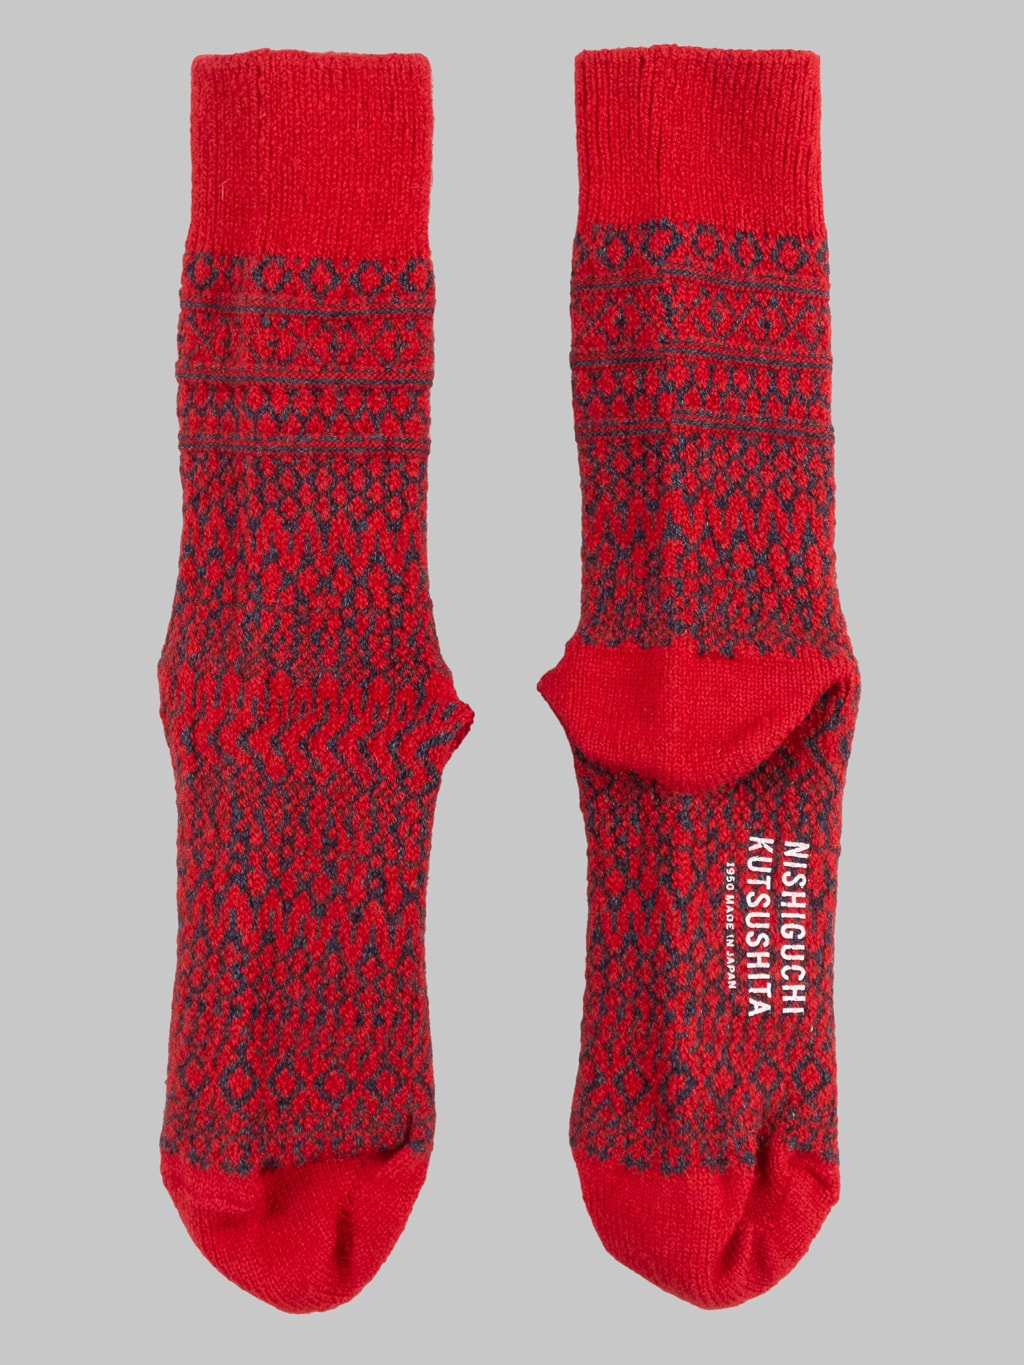 nishiguchi kutsushita oslo wool jacquard socks red back